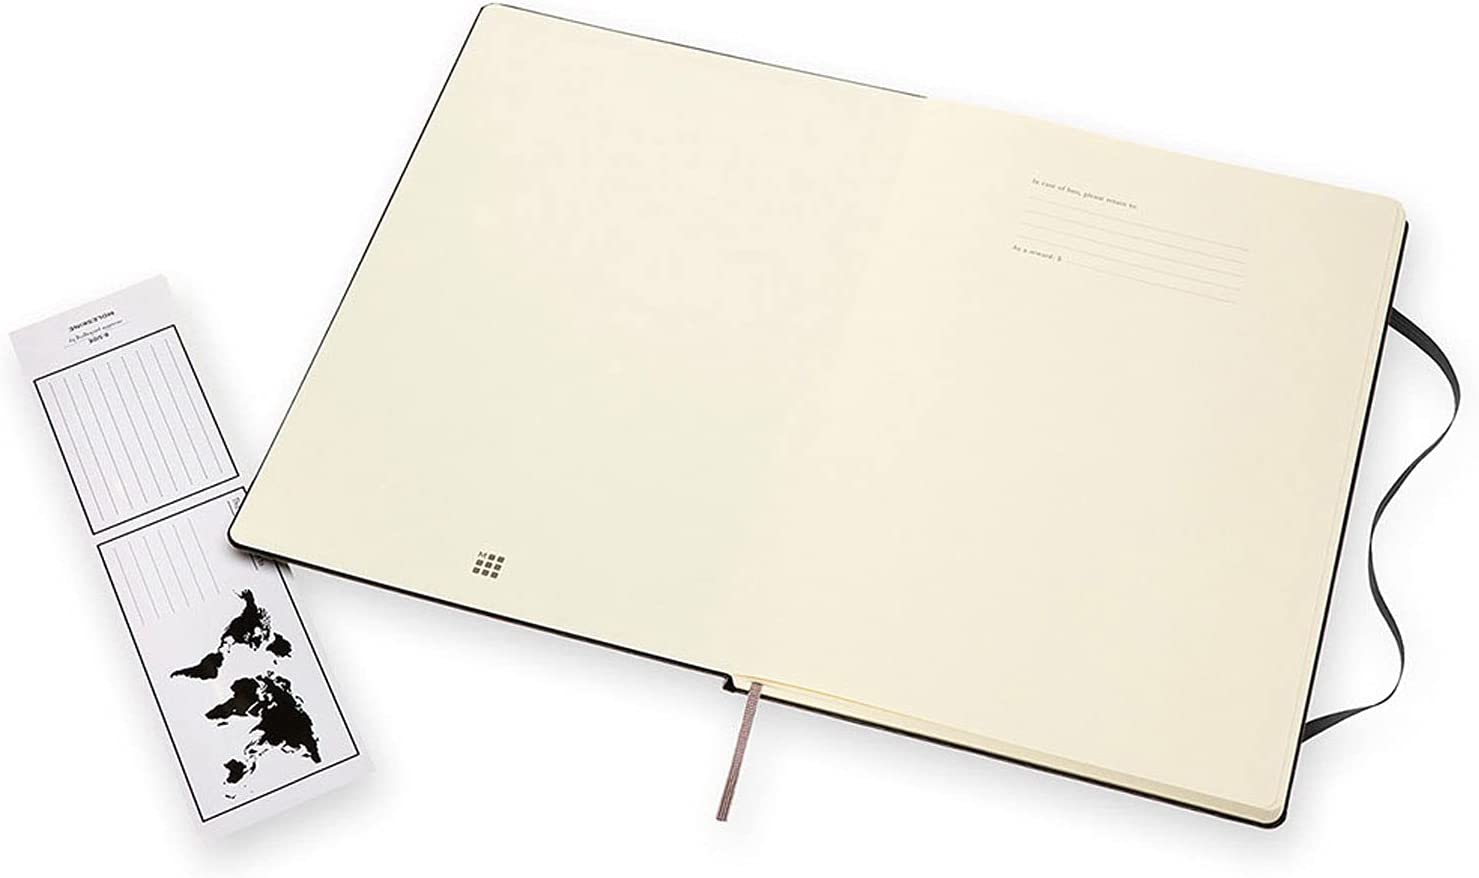 Moleskine A4 Sketchbook Hard Cover Plain